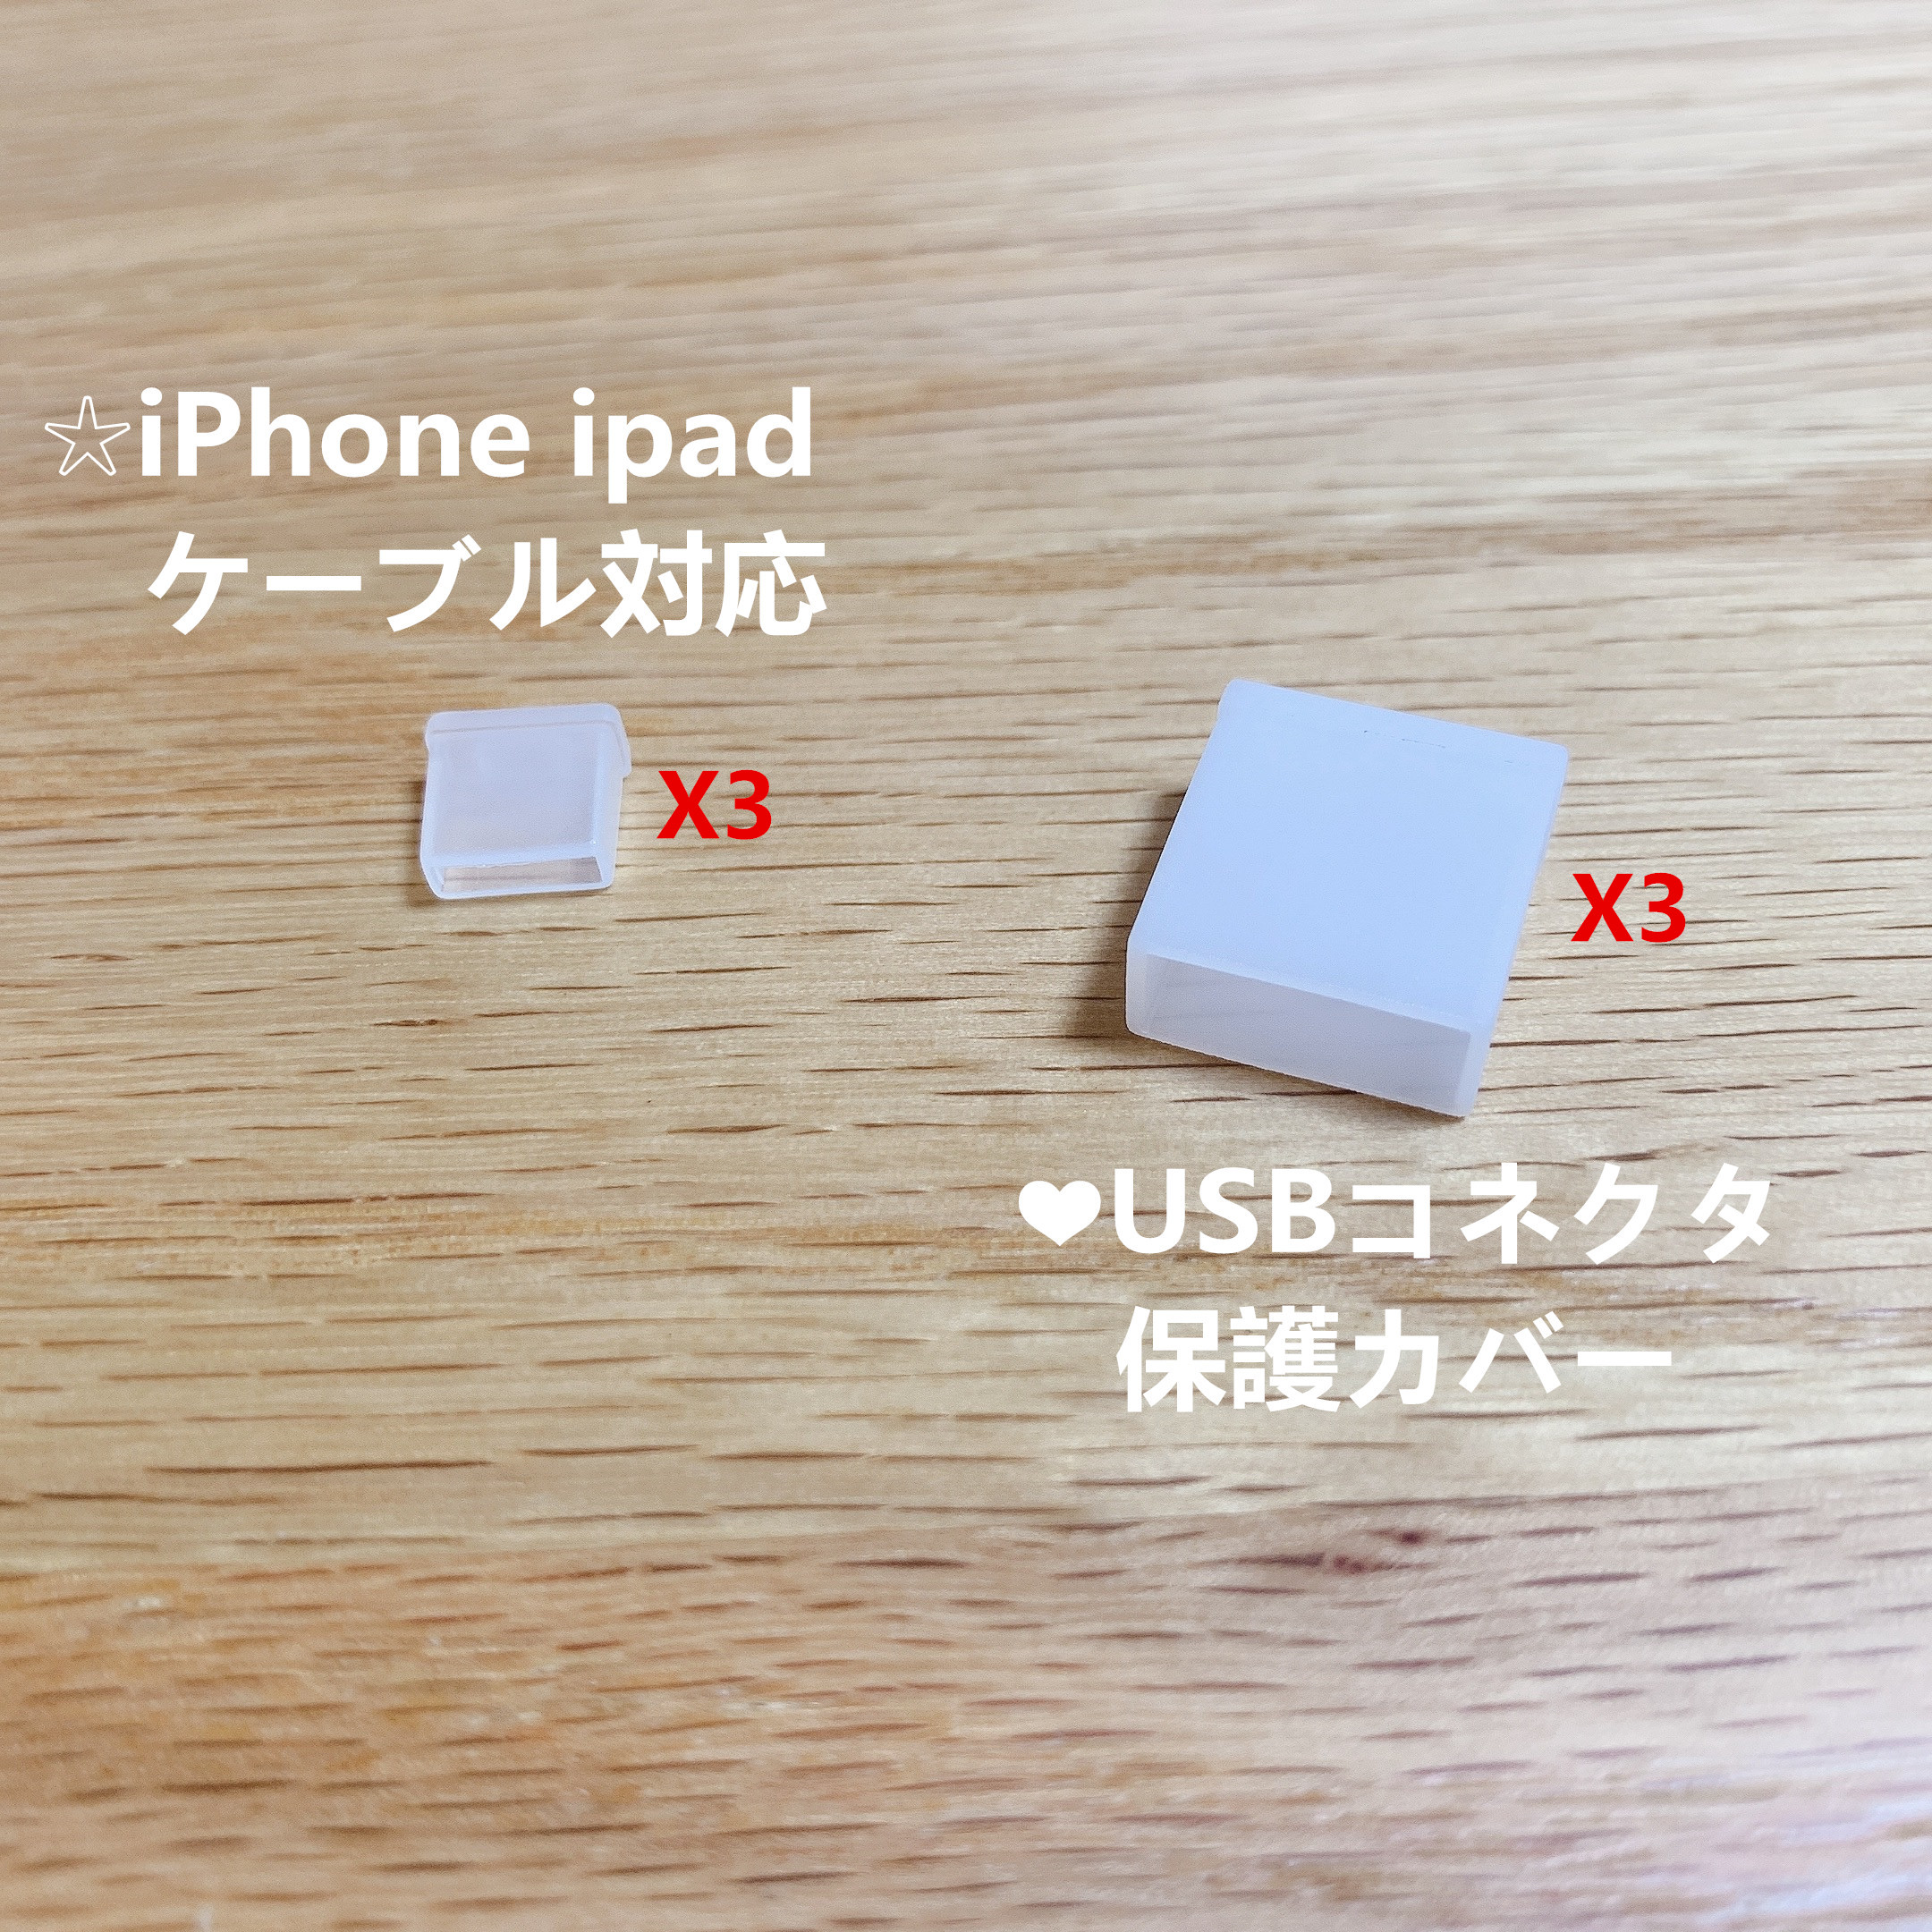 最大10%OFFクーポン 再入荷 lighting to USB コネクタ保護カバー キャップ PE製 iPhone ipad ケーブル 対応 USB2.0 3.0 3.1 USB-Aタイプ idiskk-USB mojipodaci.rs mojipodaci.rs